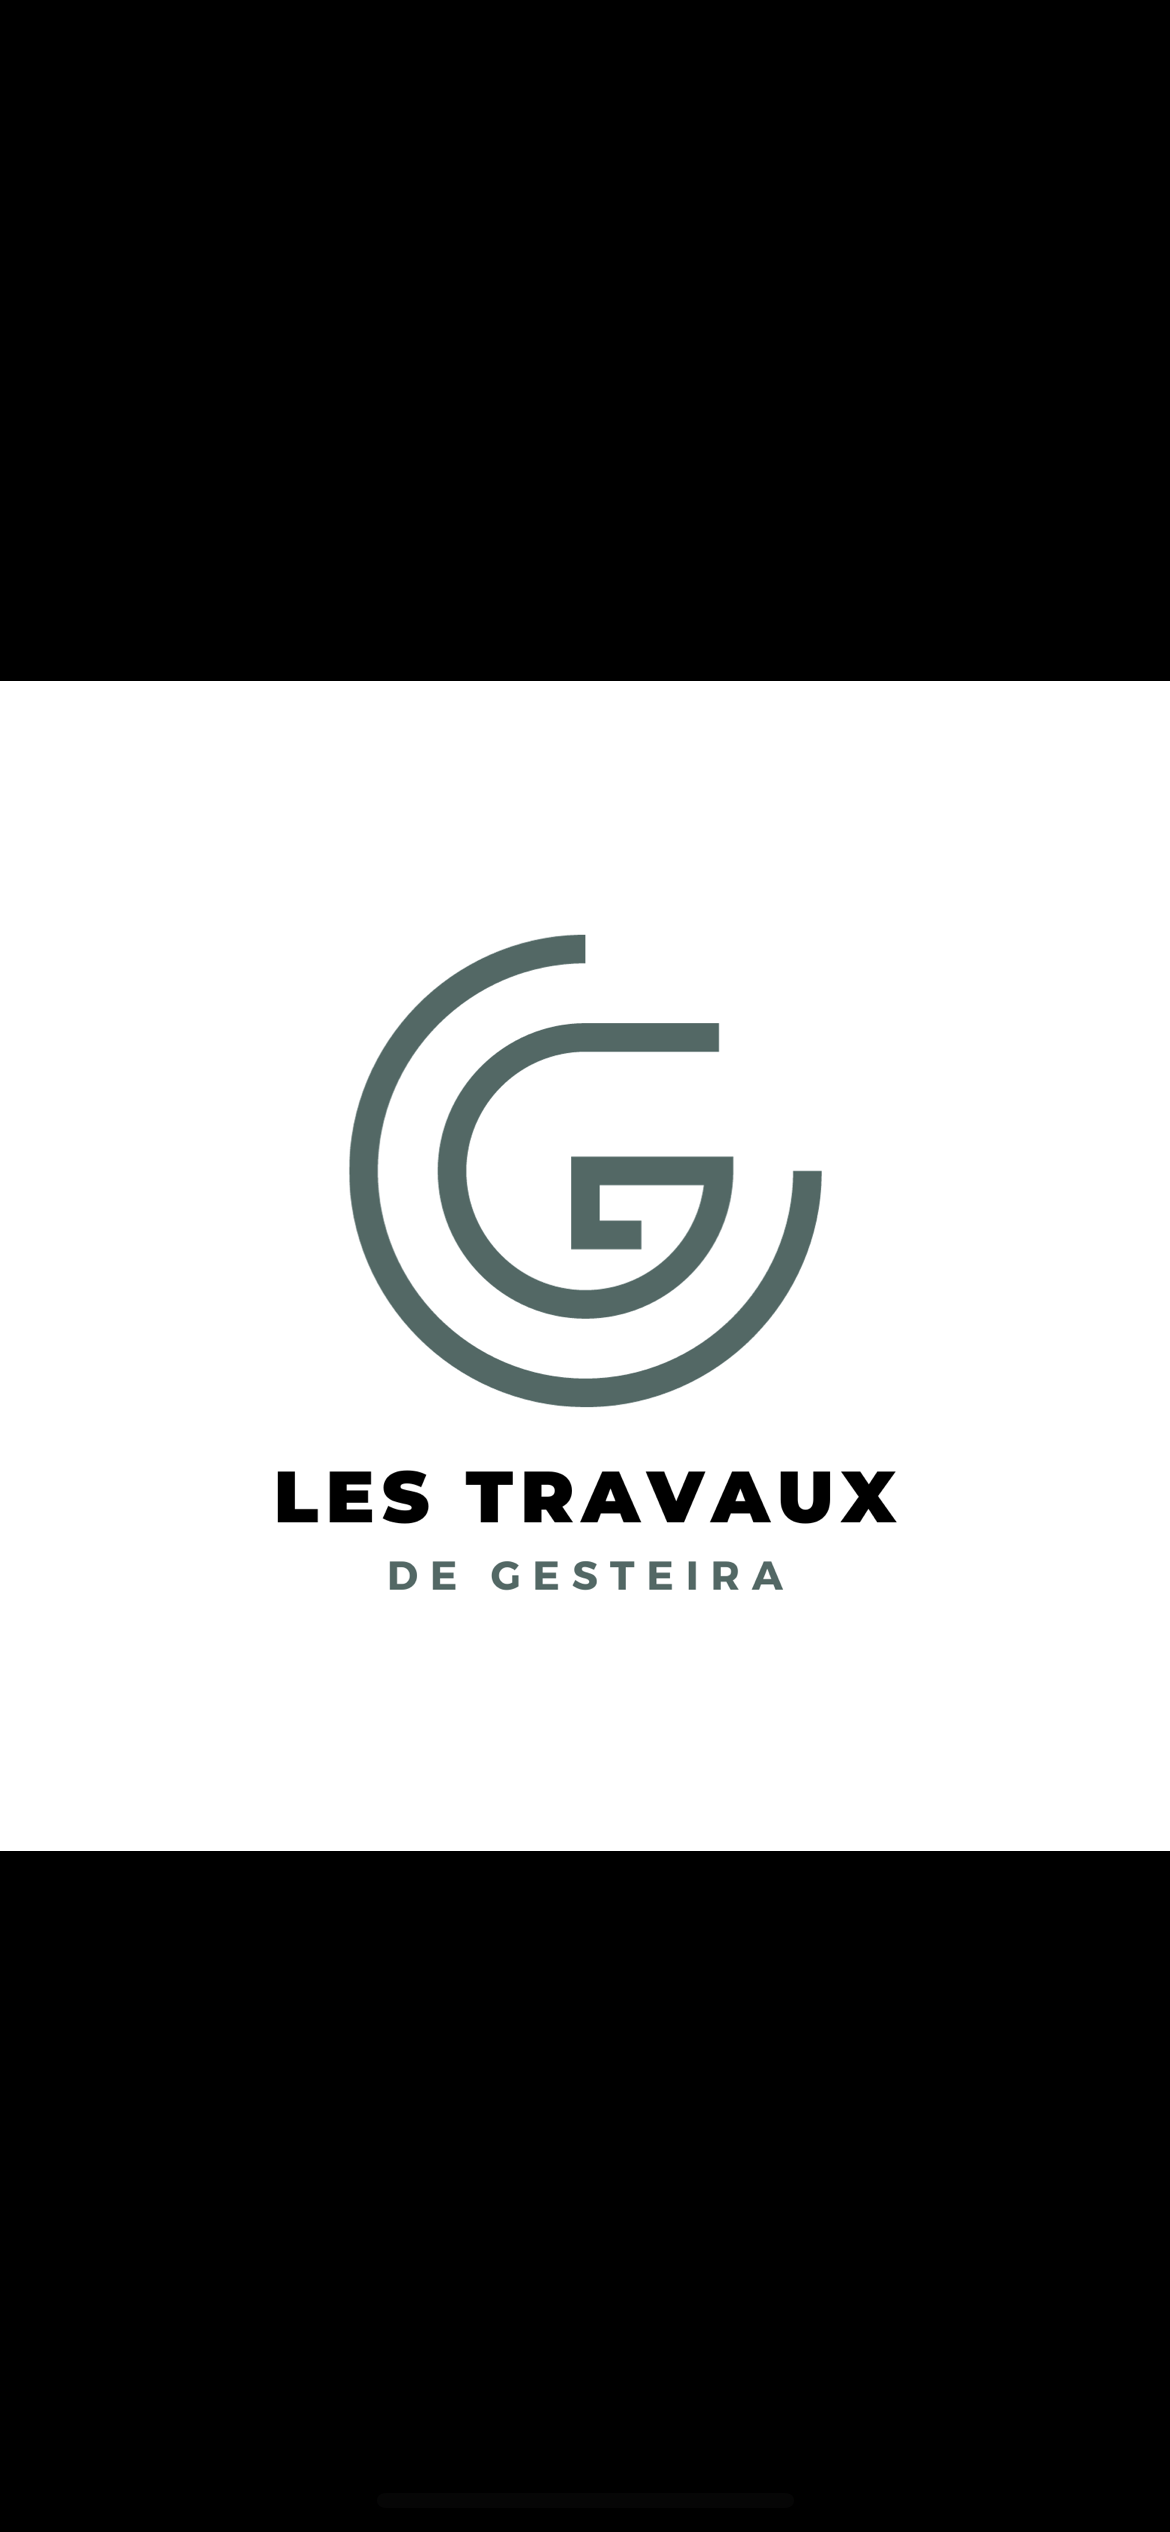 Logo de Lestravauxdegesteira, société de travaux en Création de jardins, pelouses et de parcs